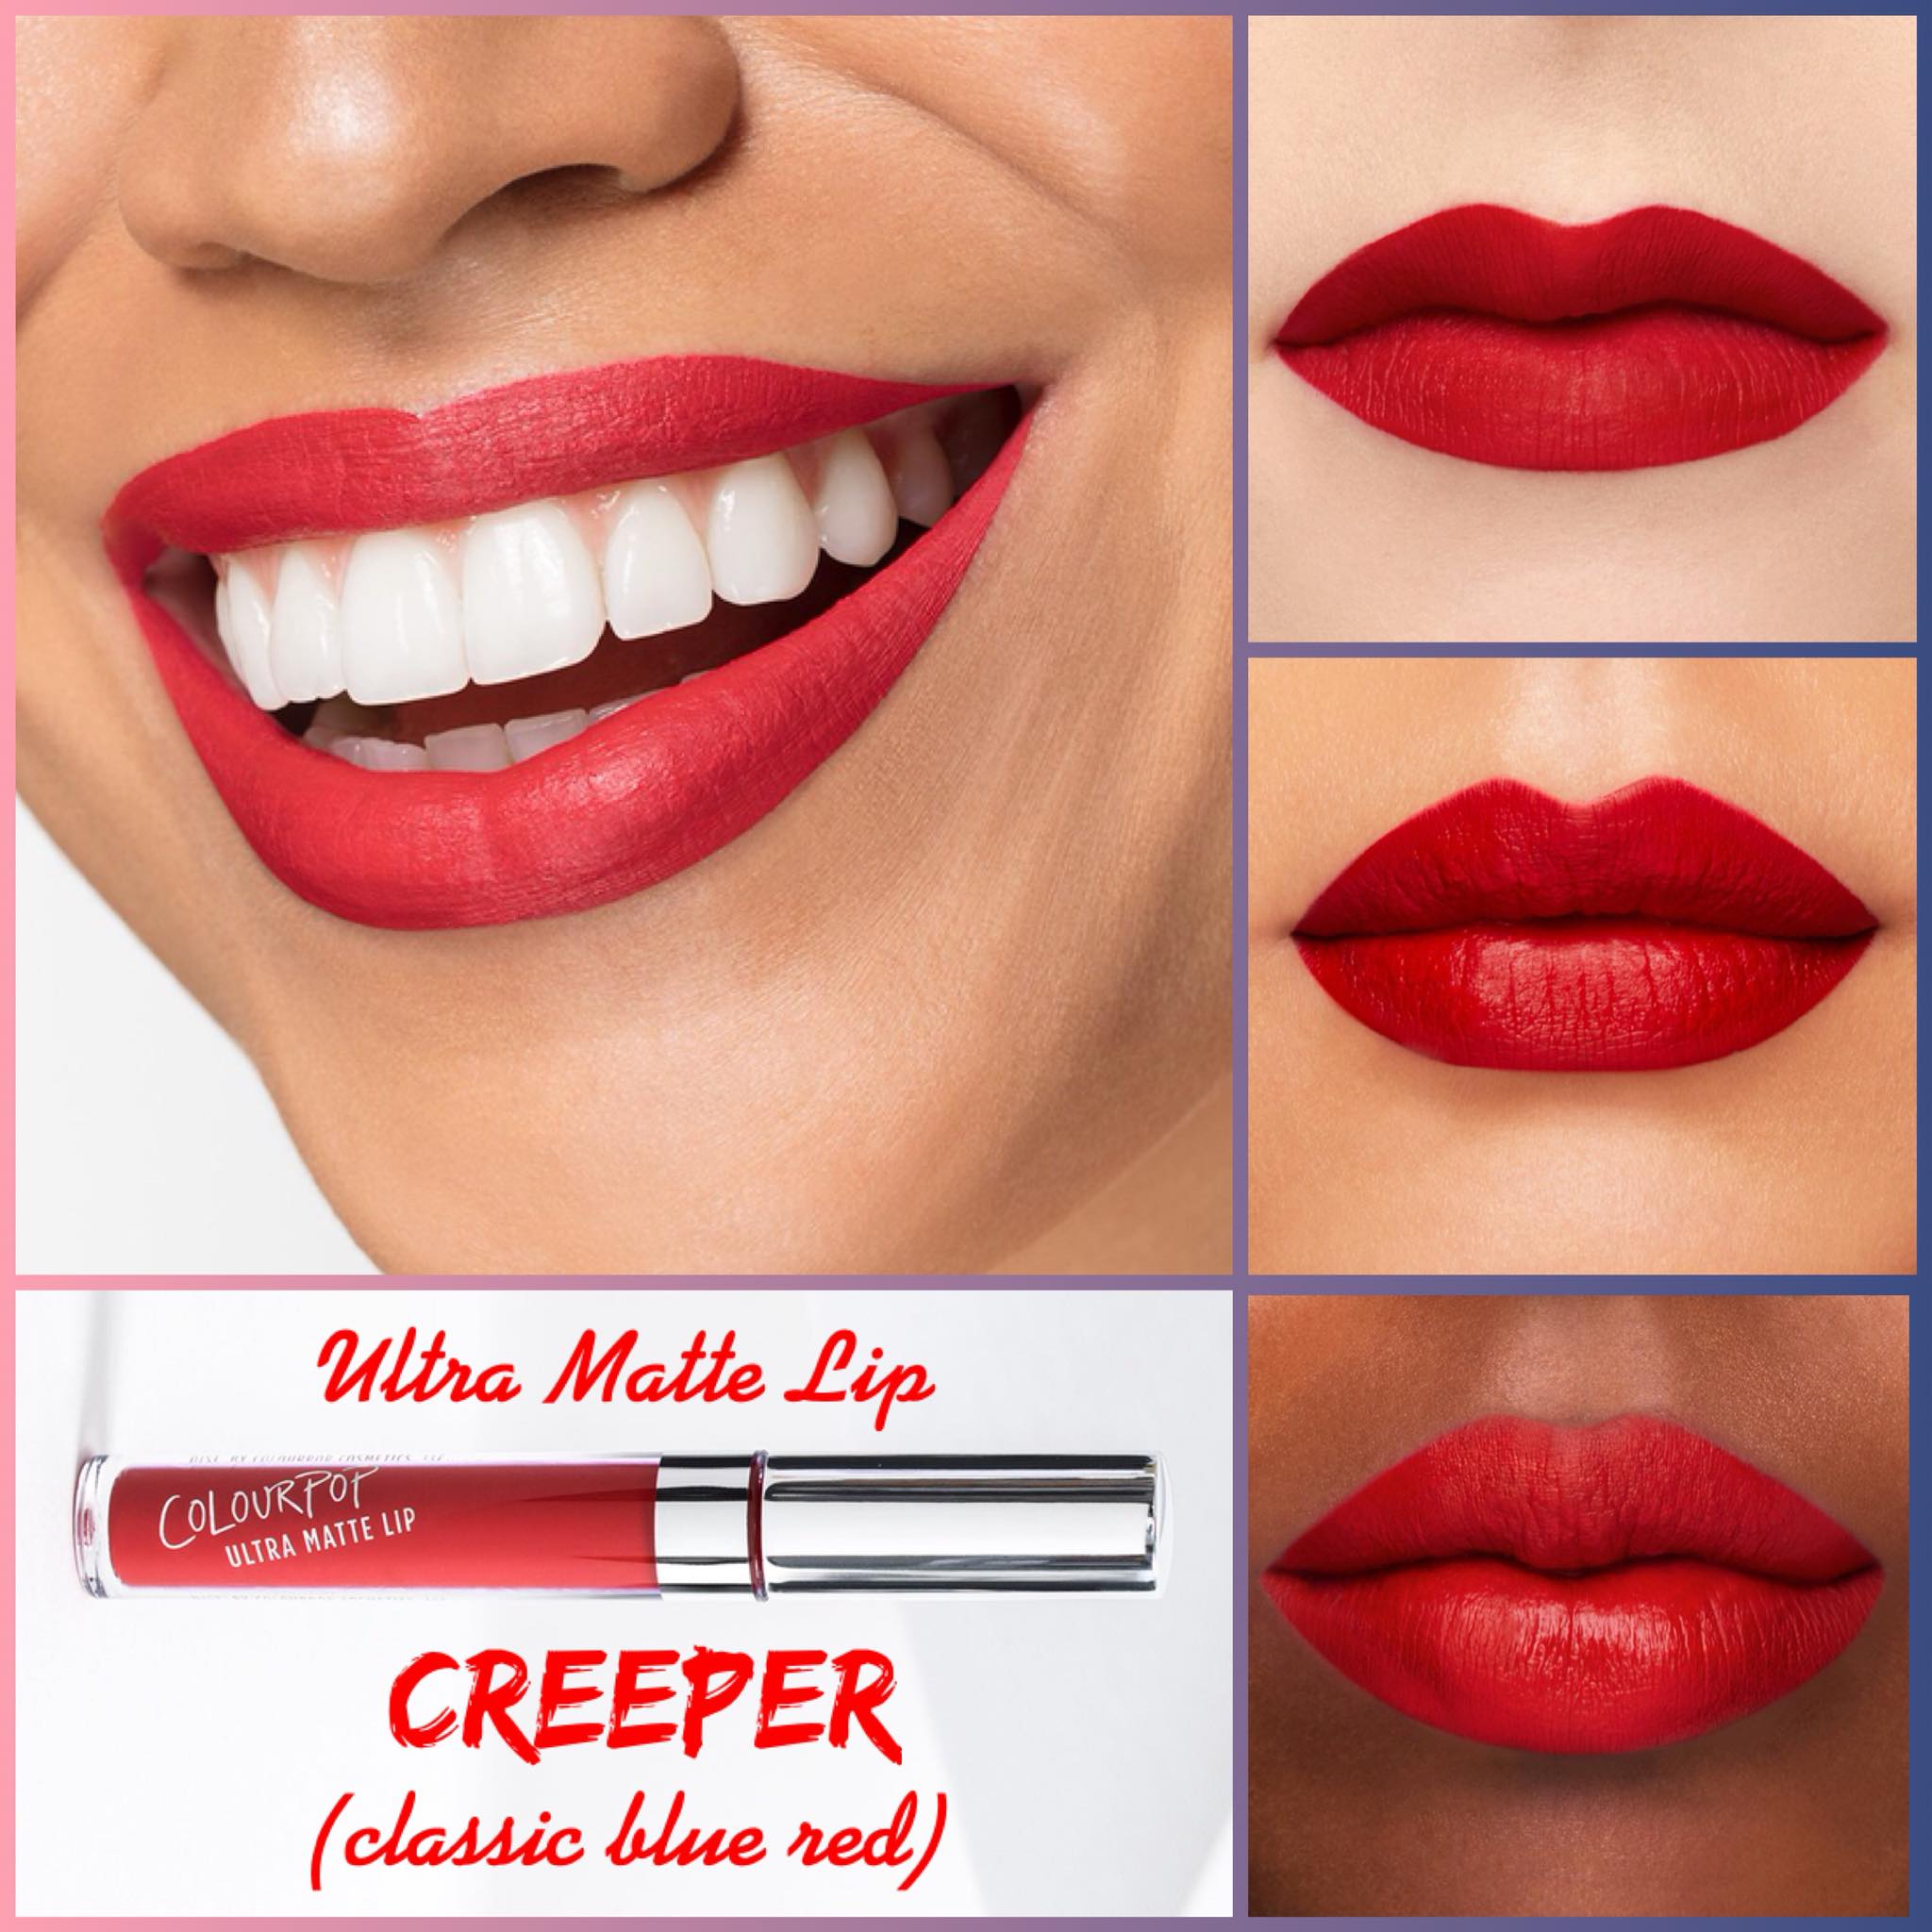 Colourpop Creeper Lipstick